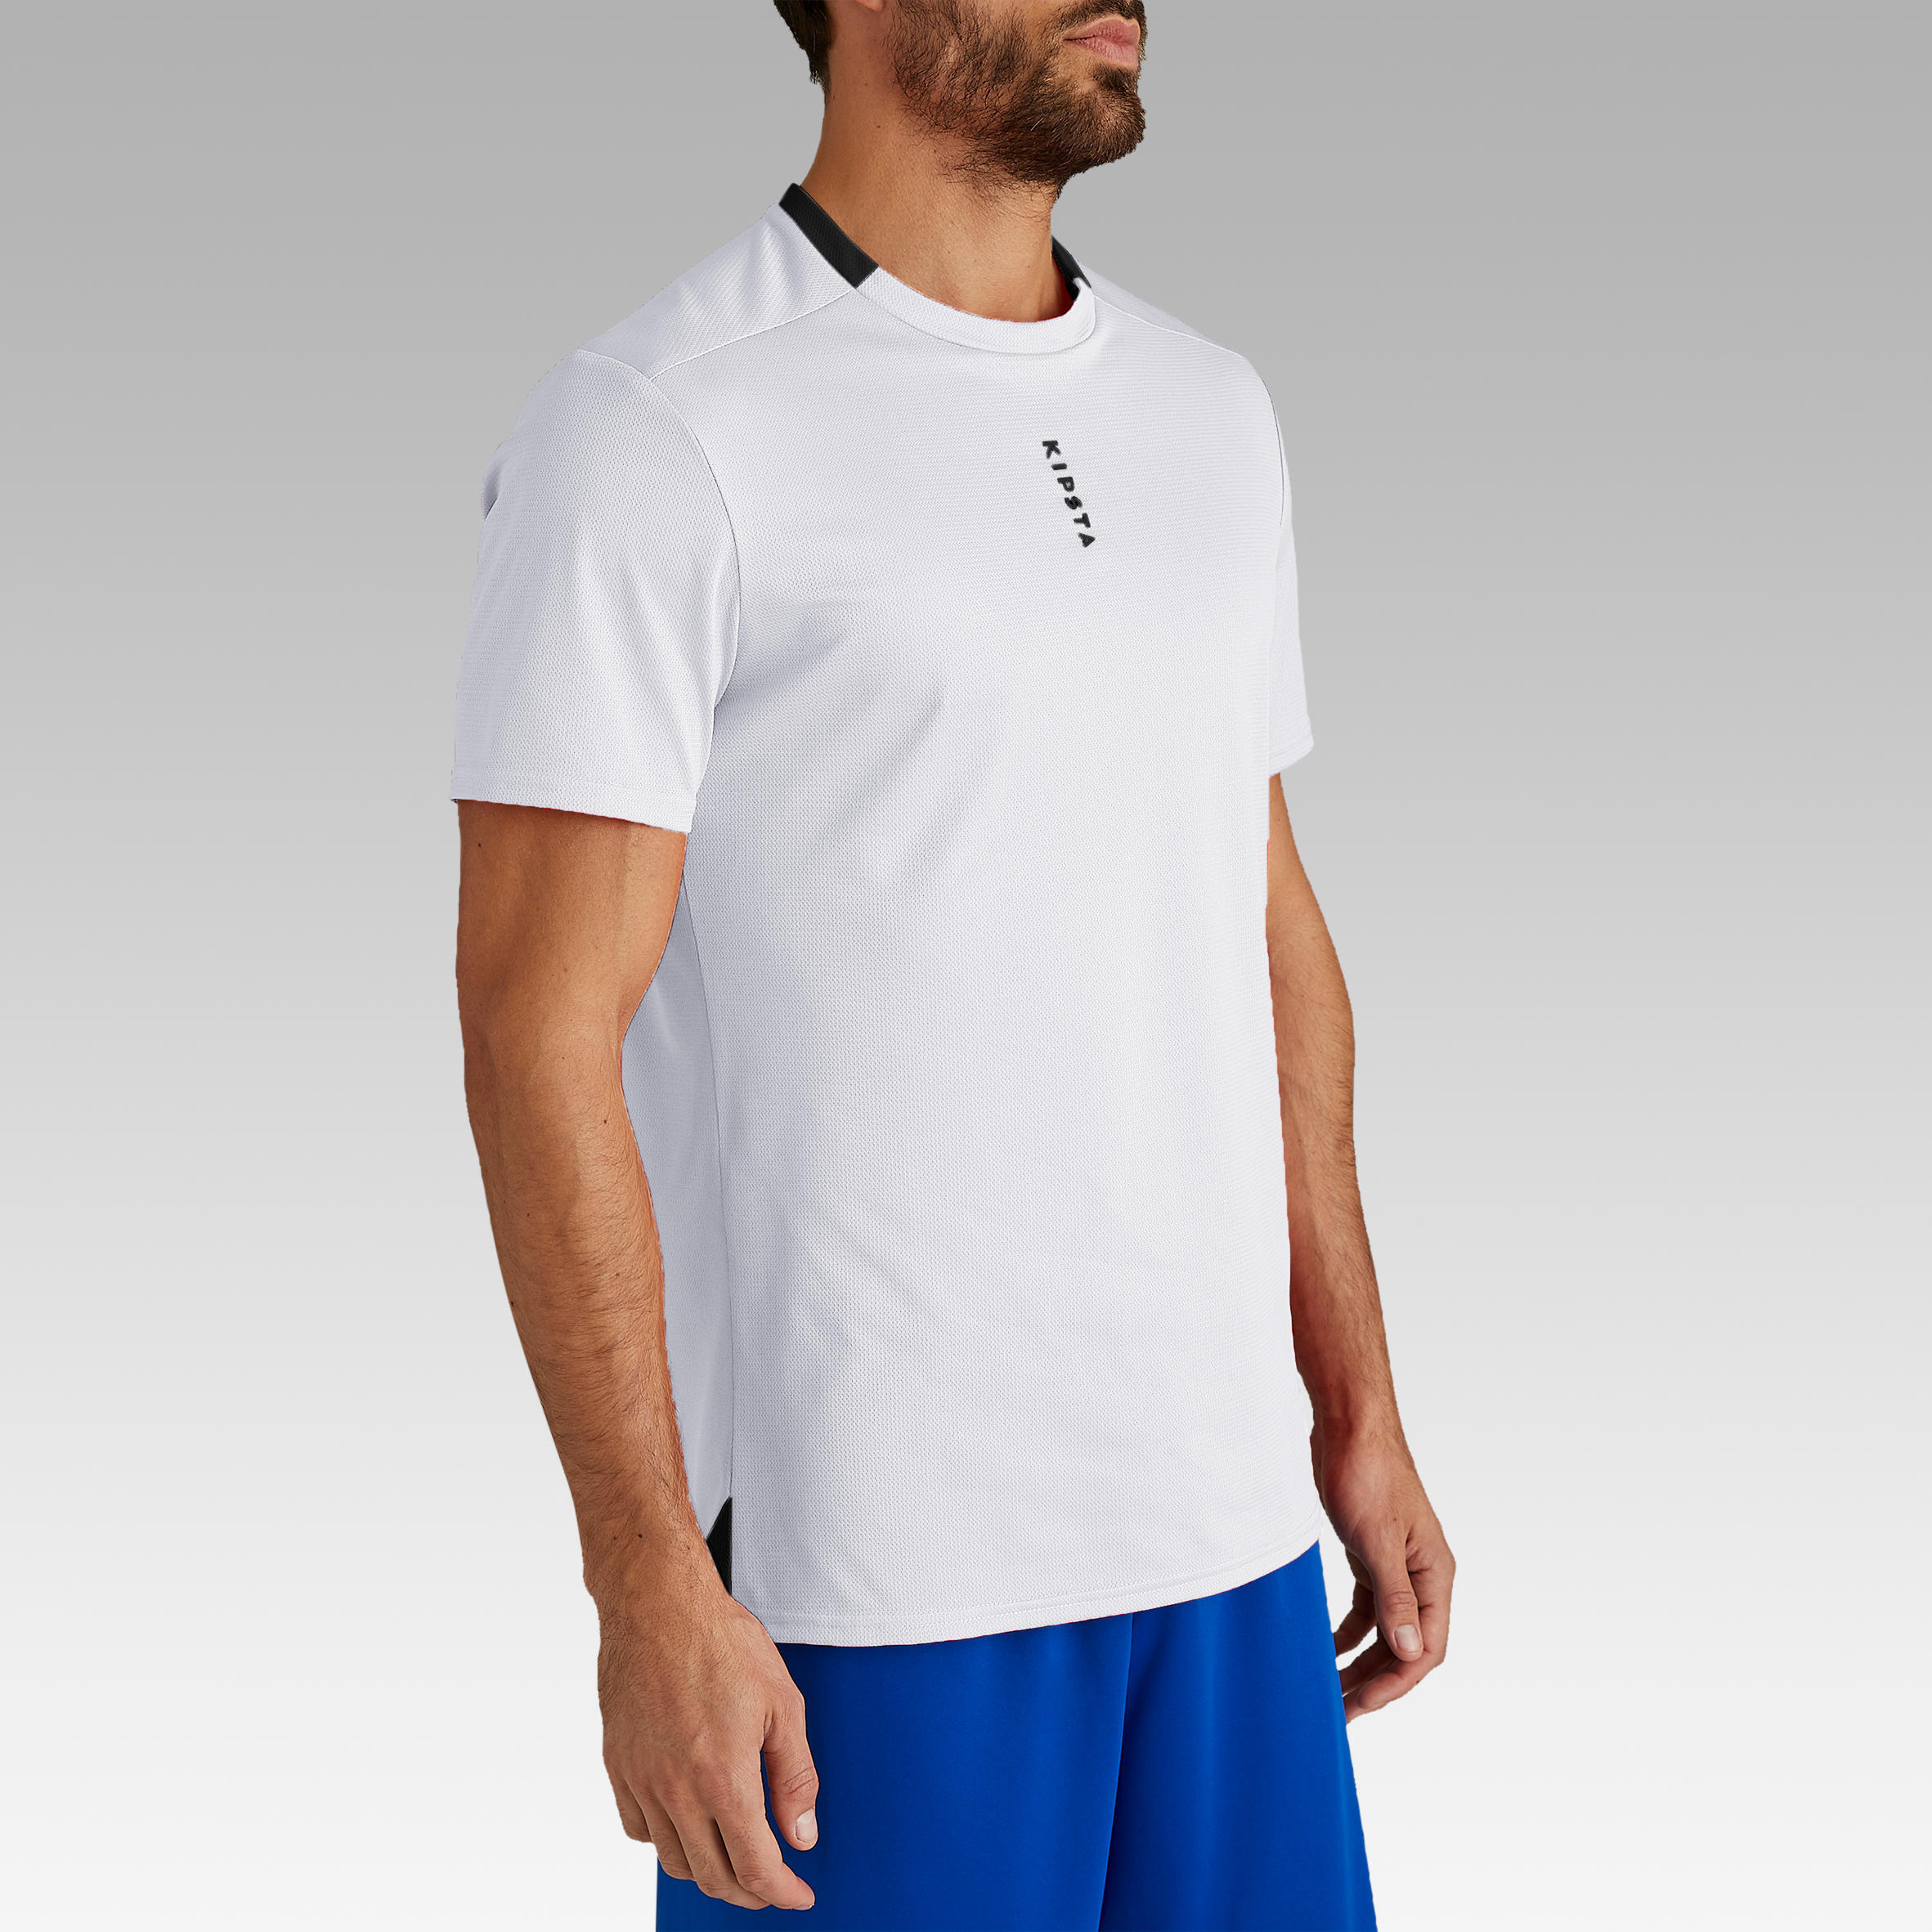 Adult Football Shirt Essential Club - White 15/29